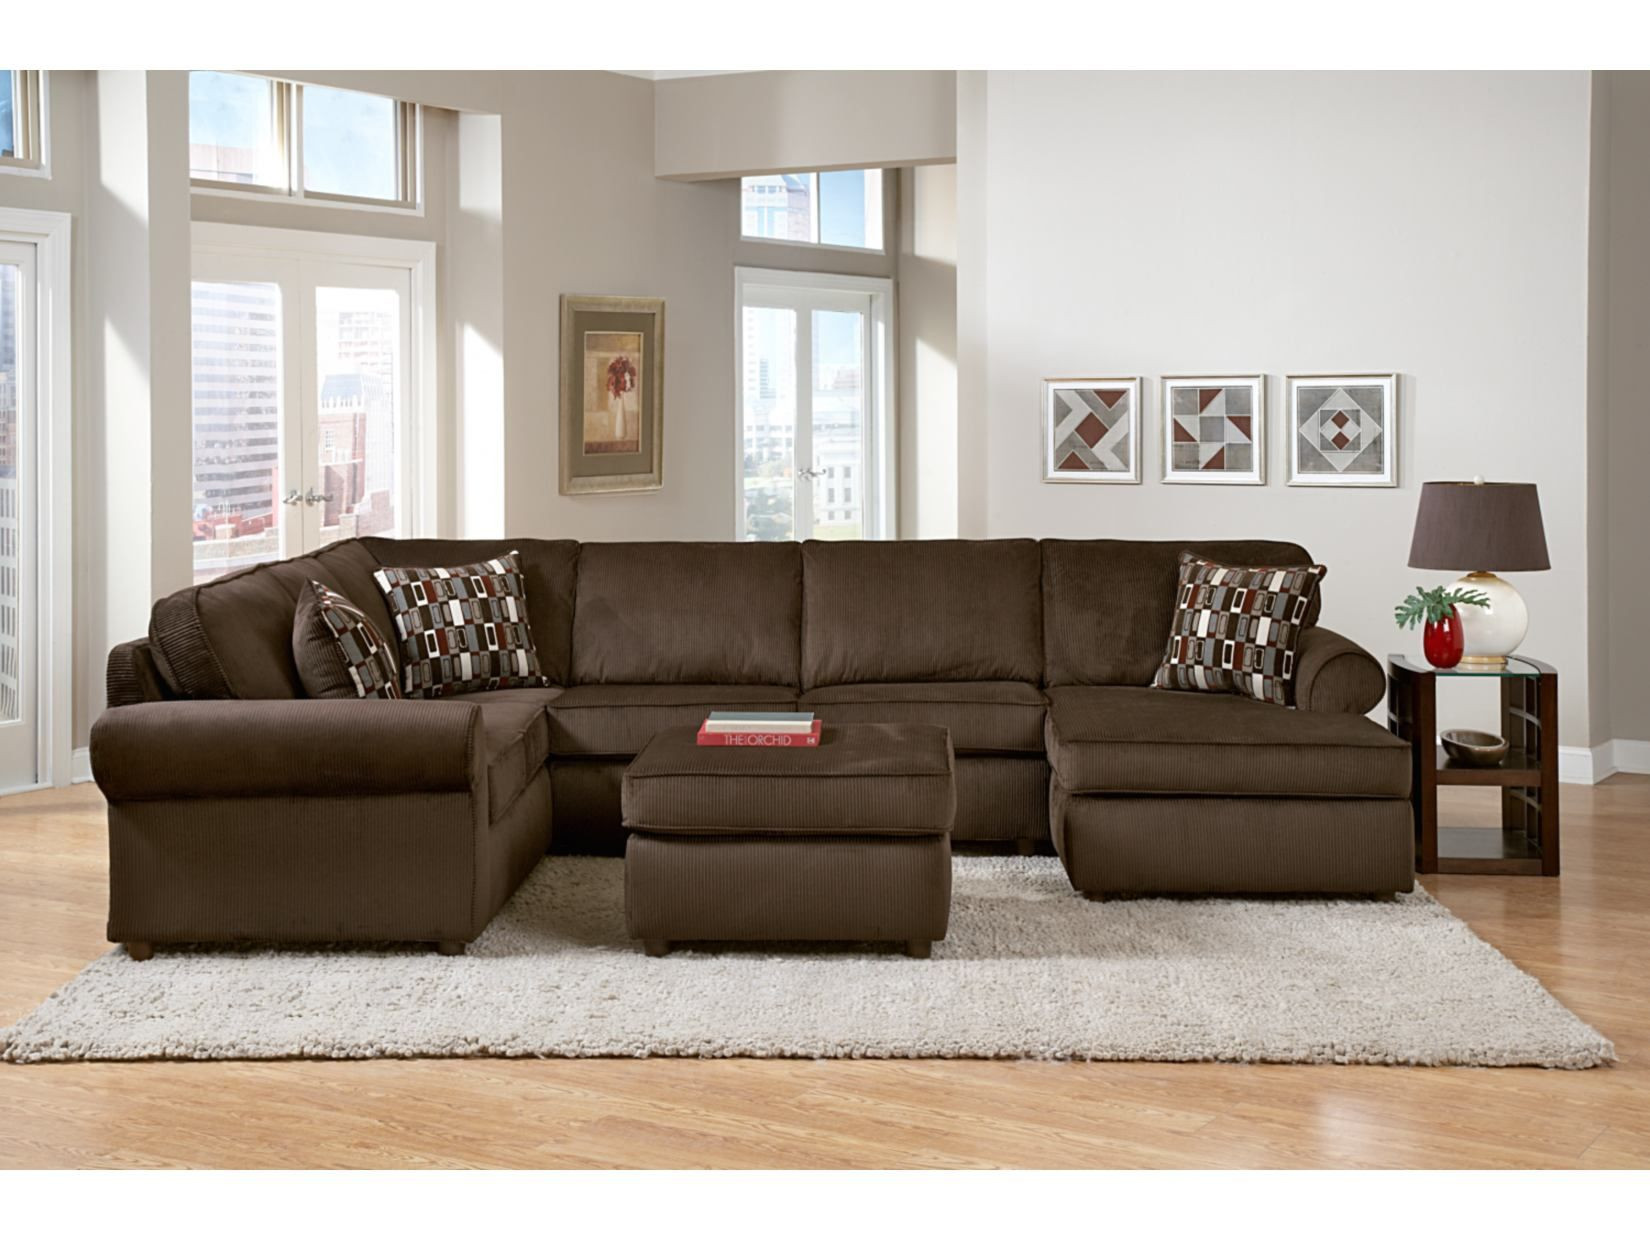 value city furniture living room sets